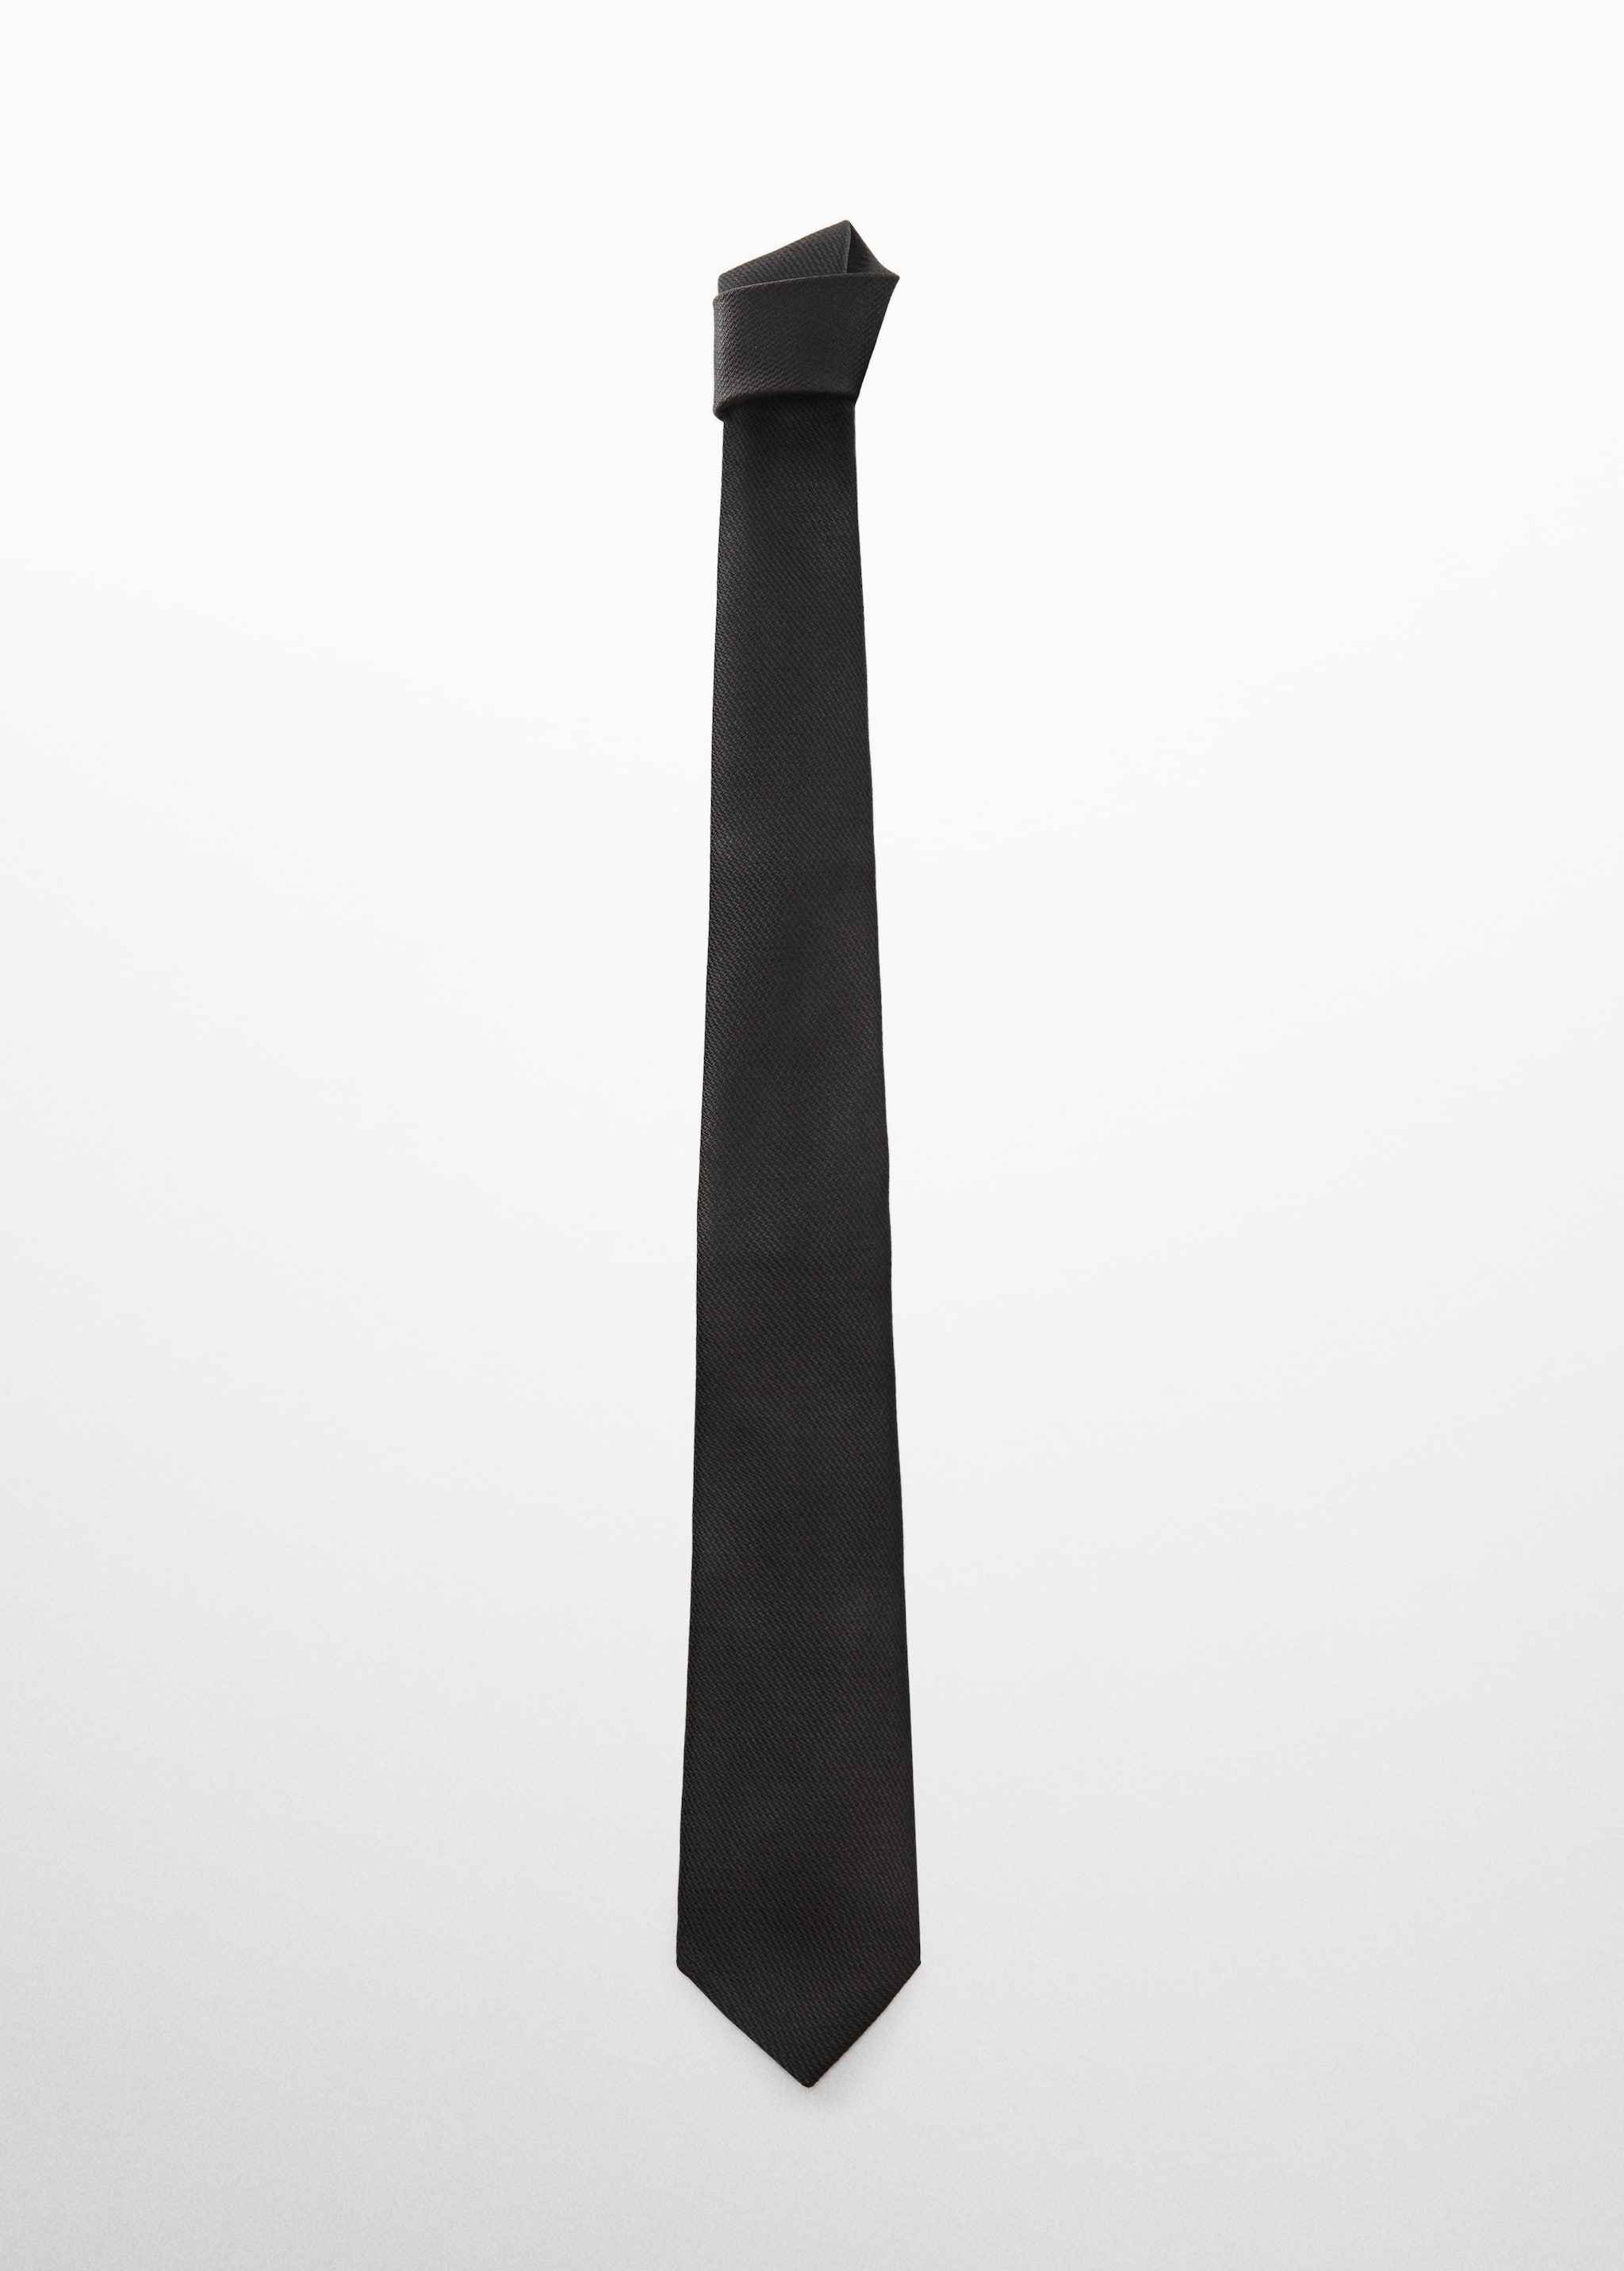 ربطة عنق منظمة مقاومة للتجعد - منتج دون نموذج